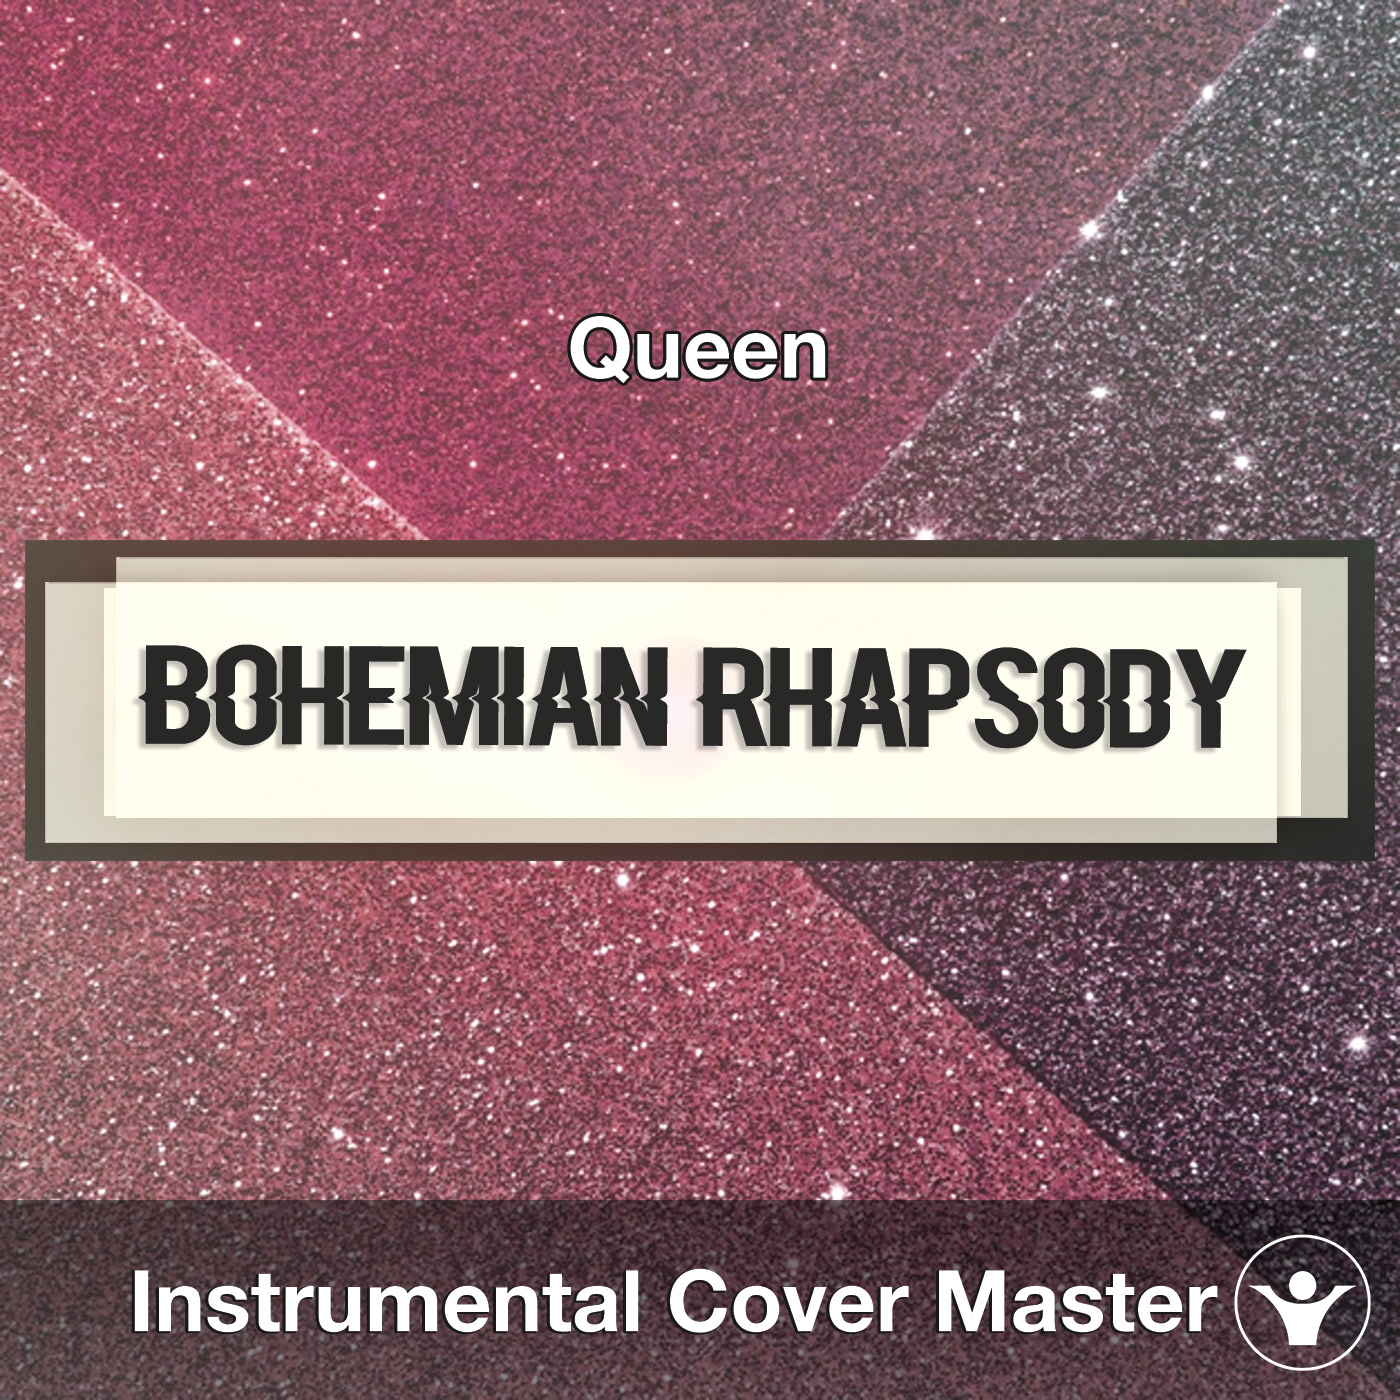 Felicidades Encogimiento princesa Bohemian Rhapsody (Queen) - Instrumental Cover